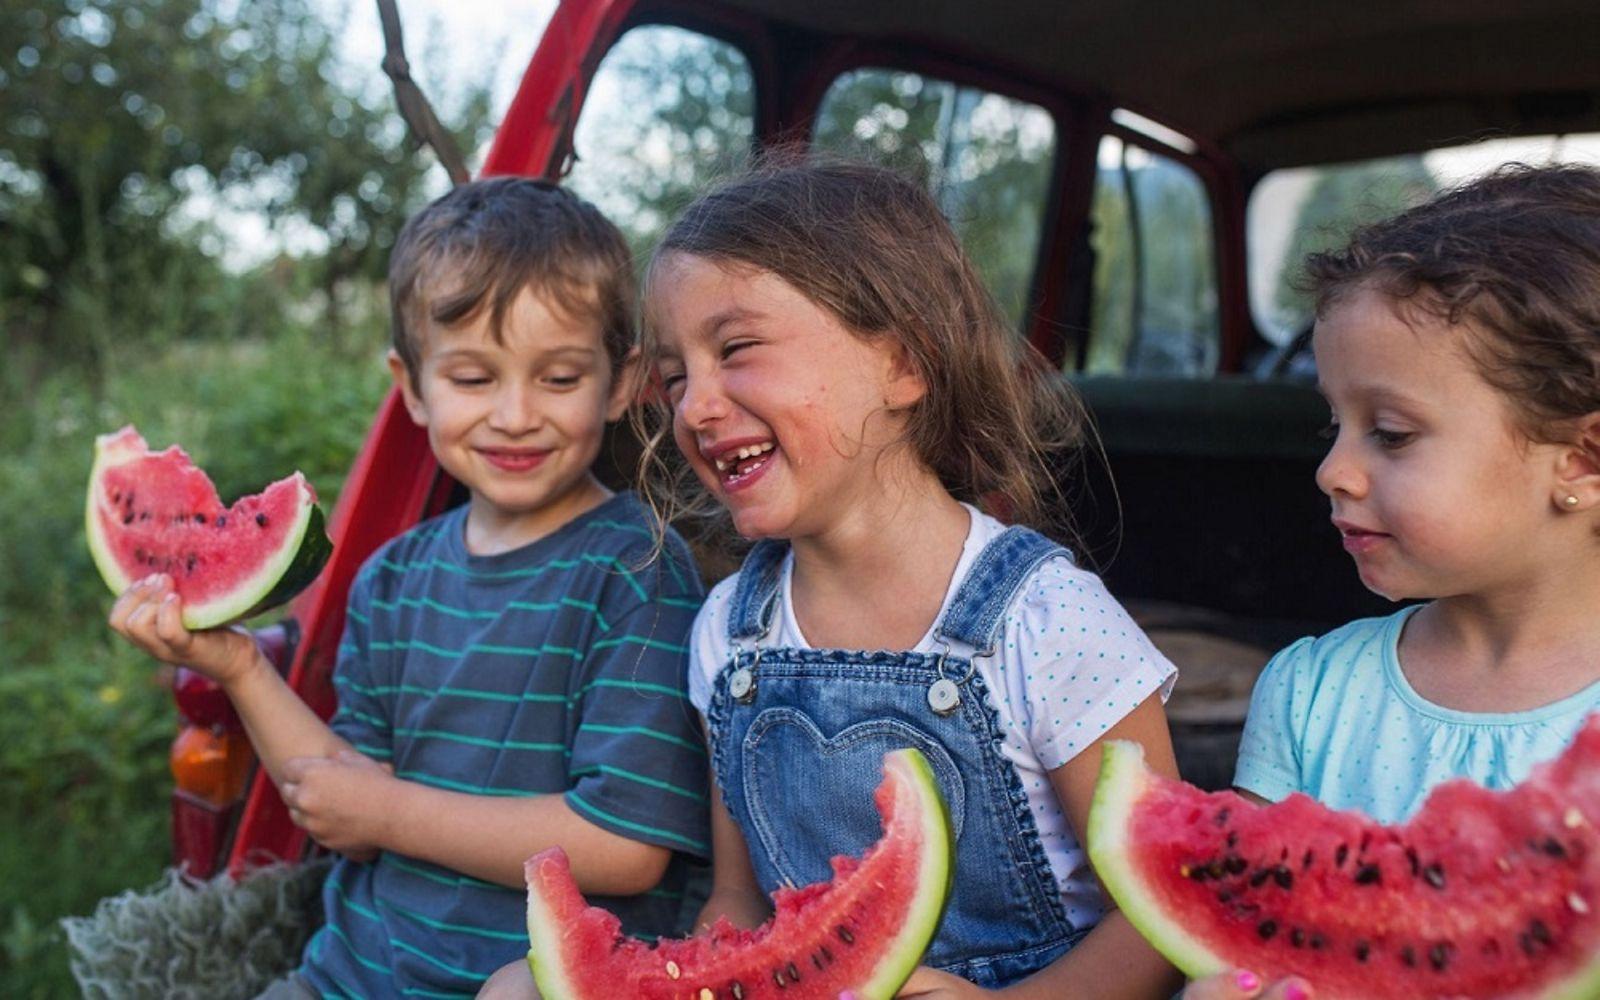 Safari-Kids: Drei Kinder sitzen lachend im offenen Kofferraum eines Autos und essen Melone.